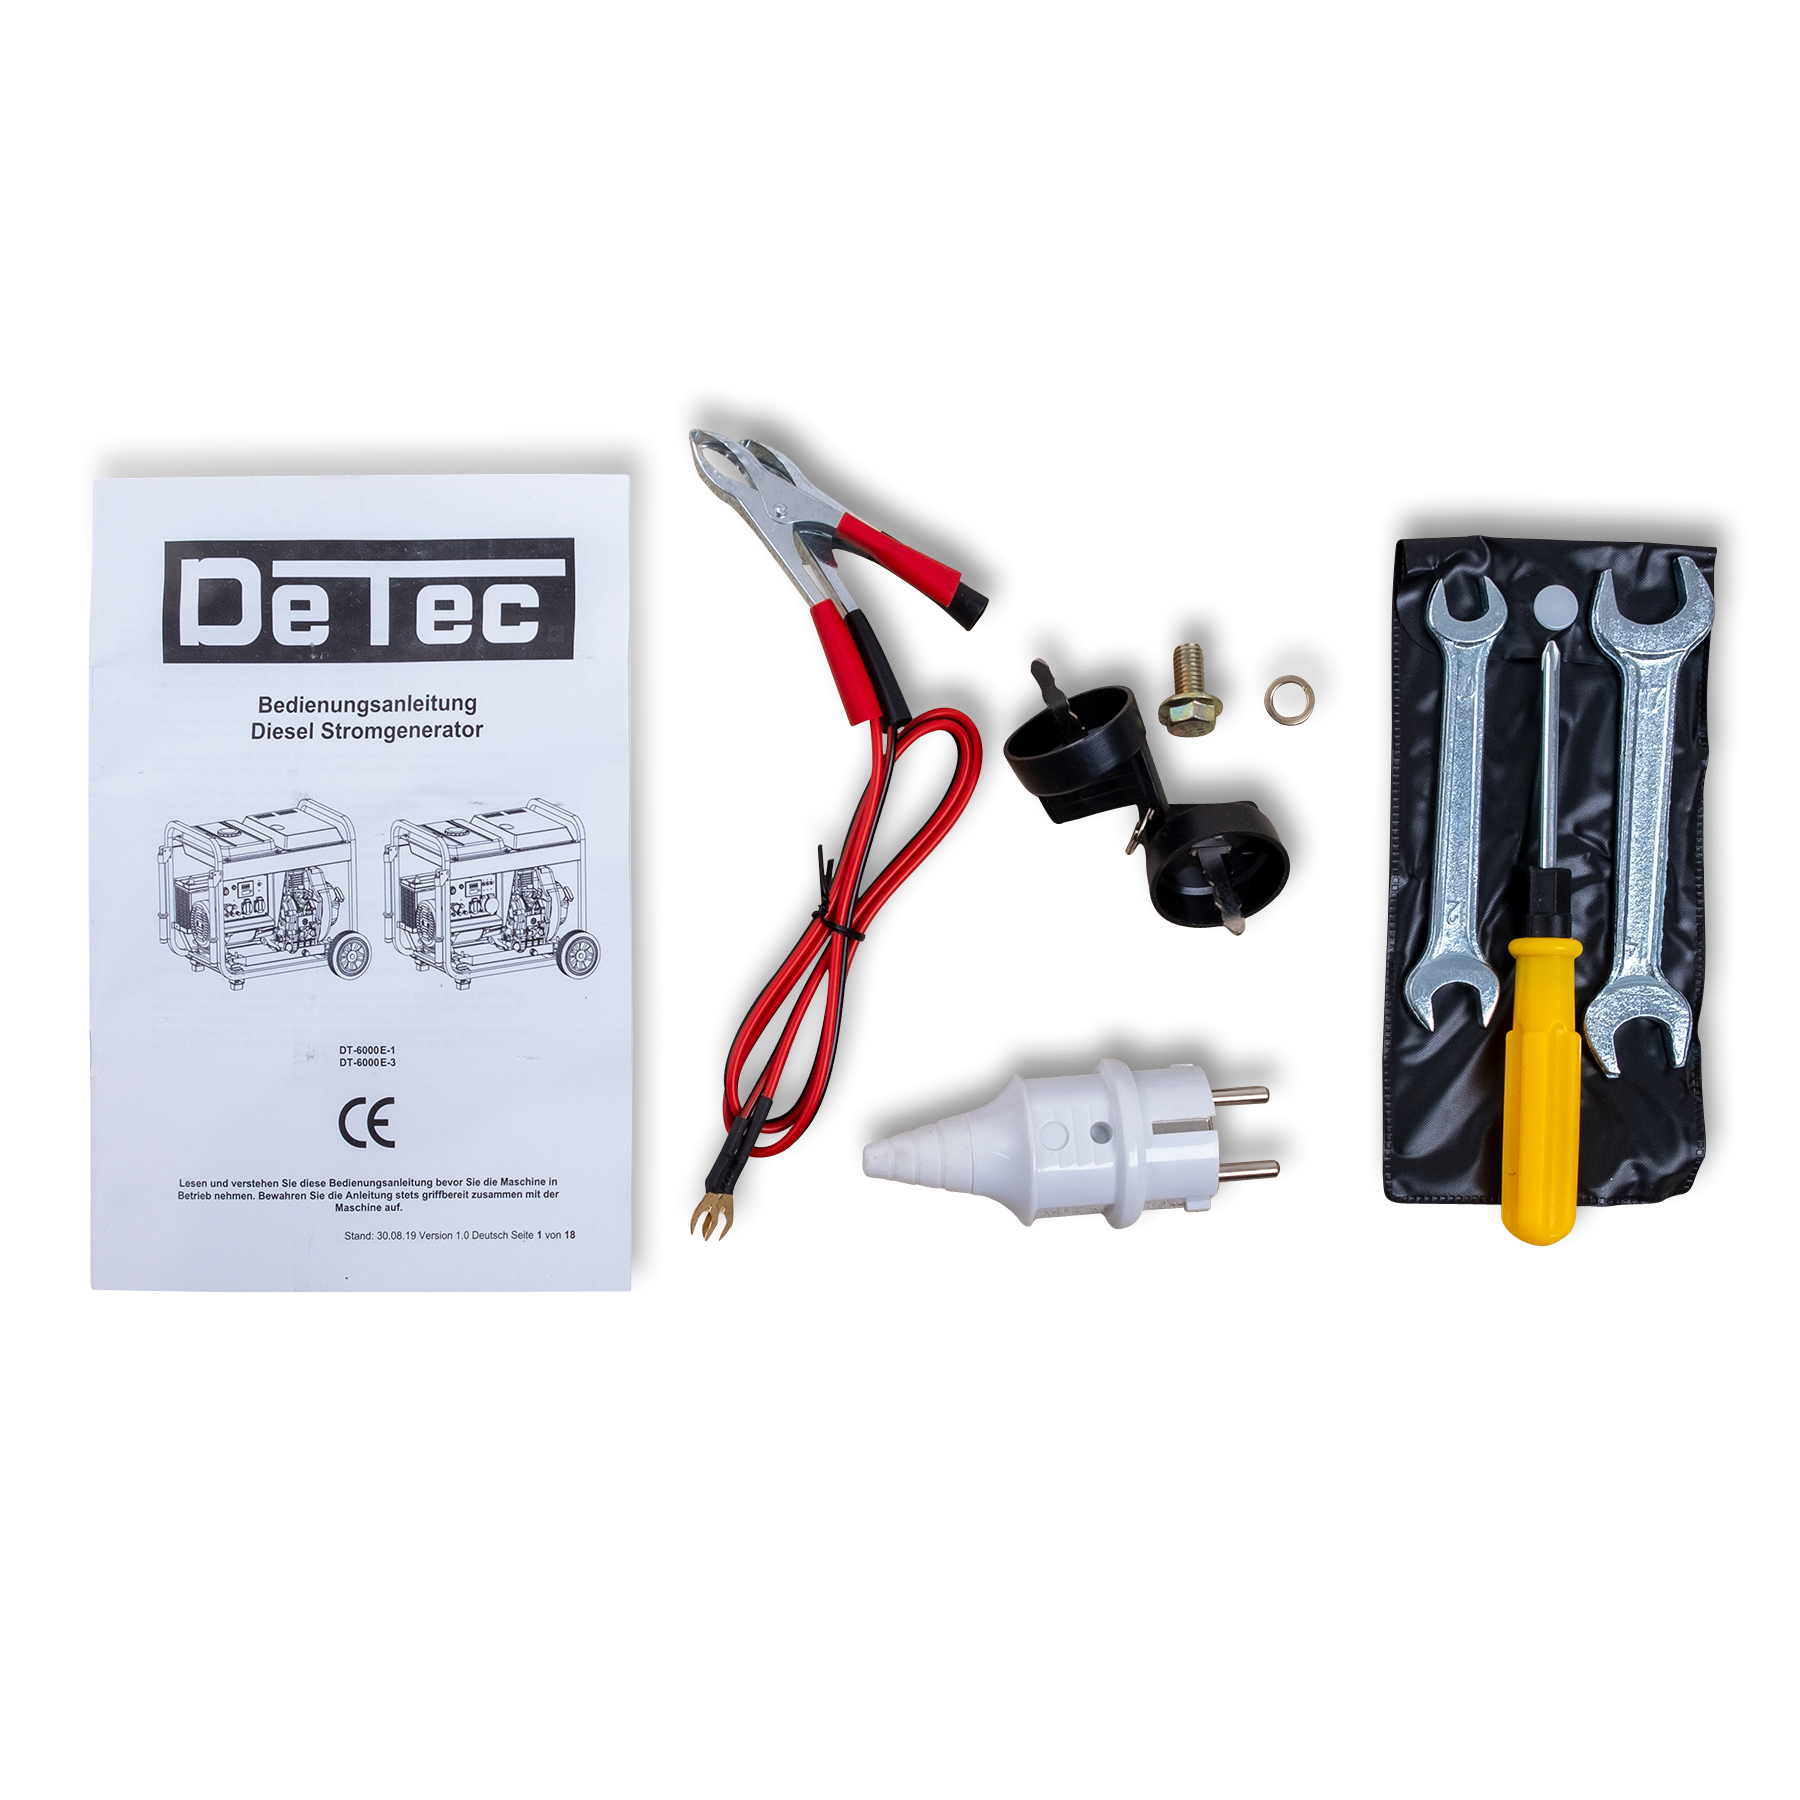 DeTec. 1-Phasen Dieselgenerator DT-6000E-1 | 5500W 230V Lichtstrom